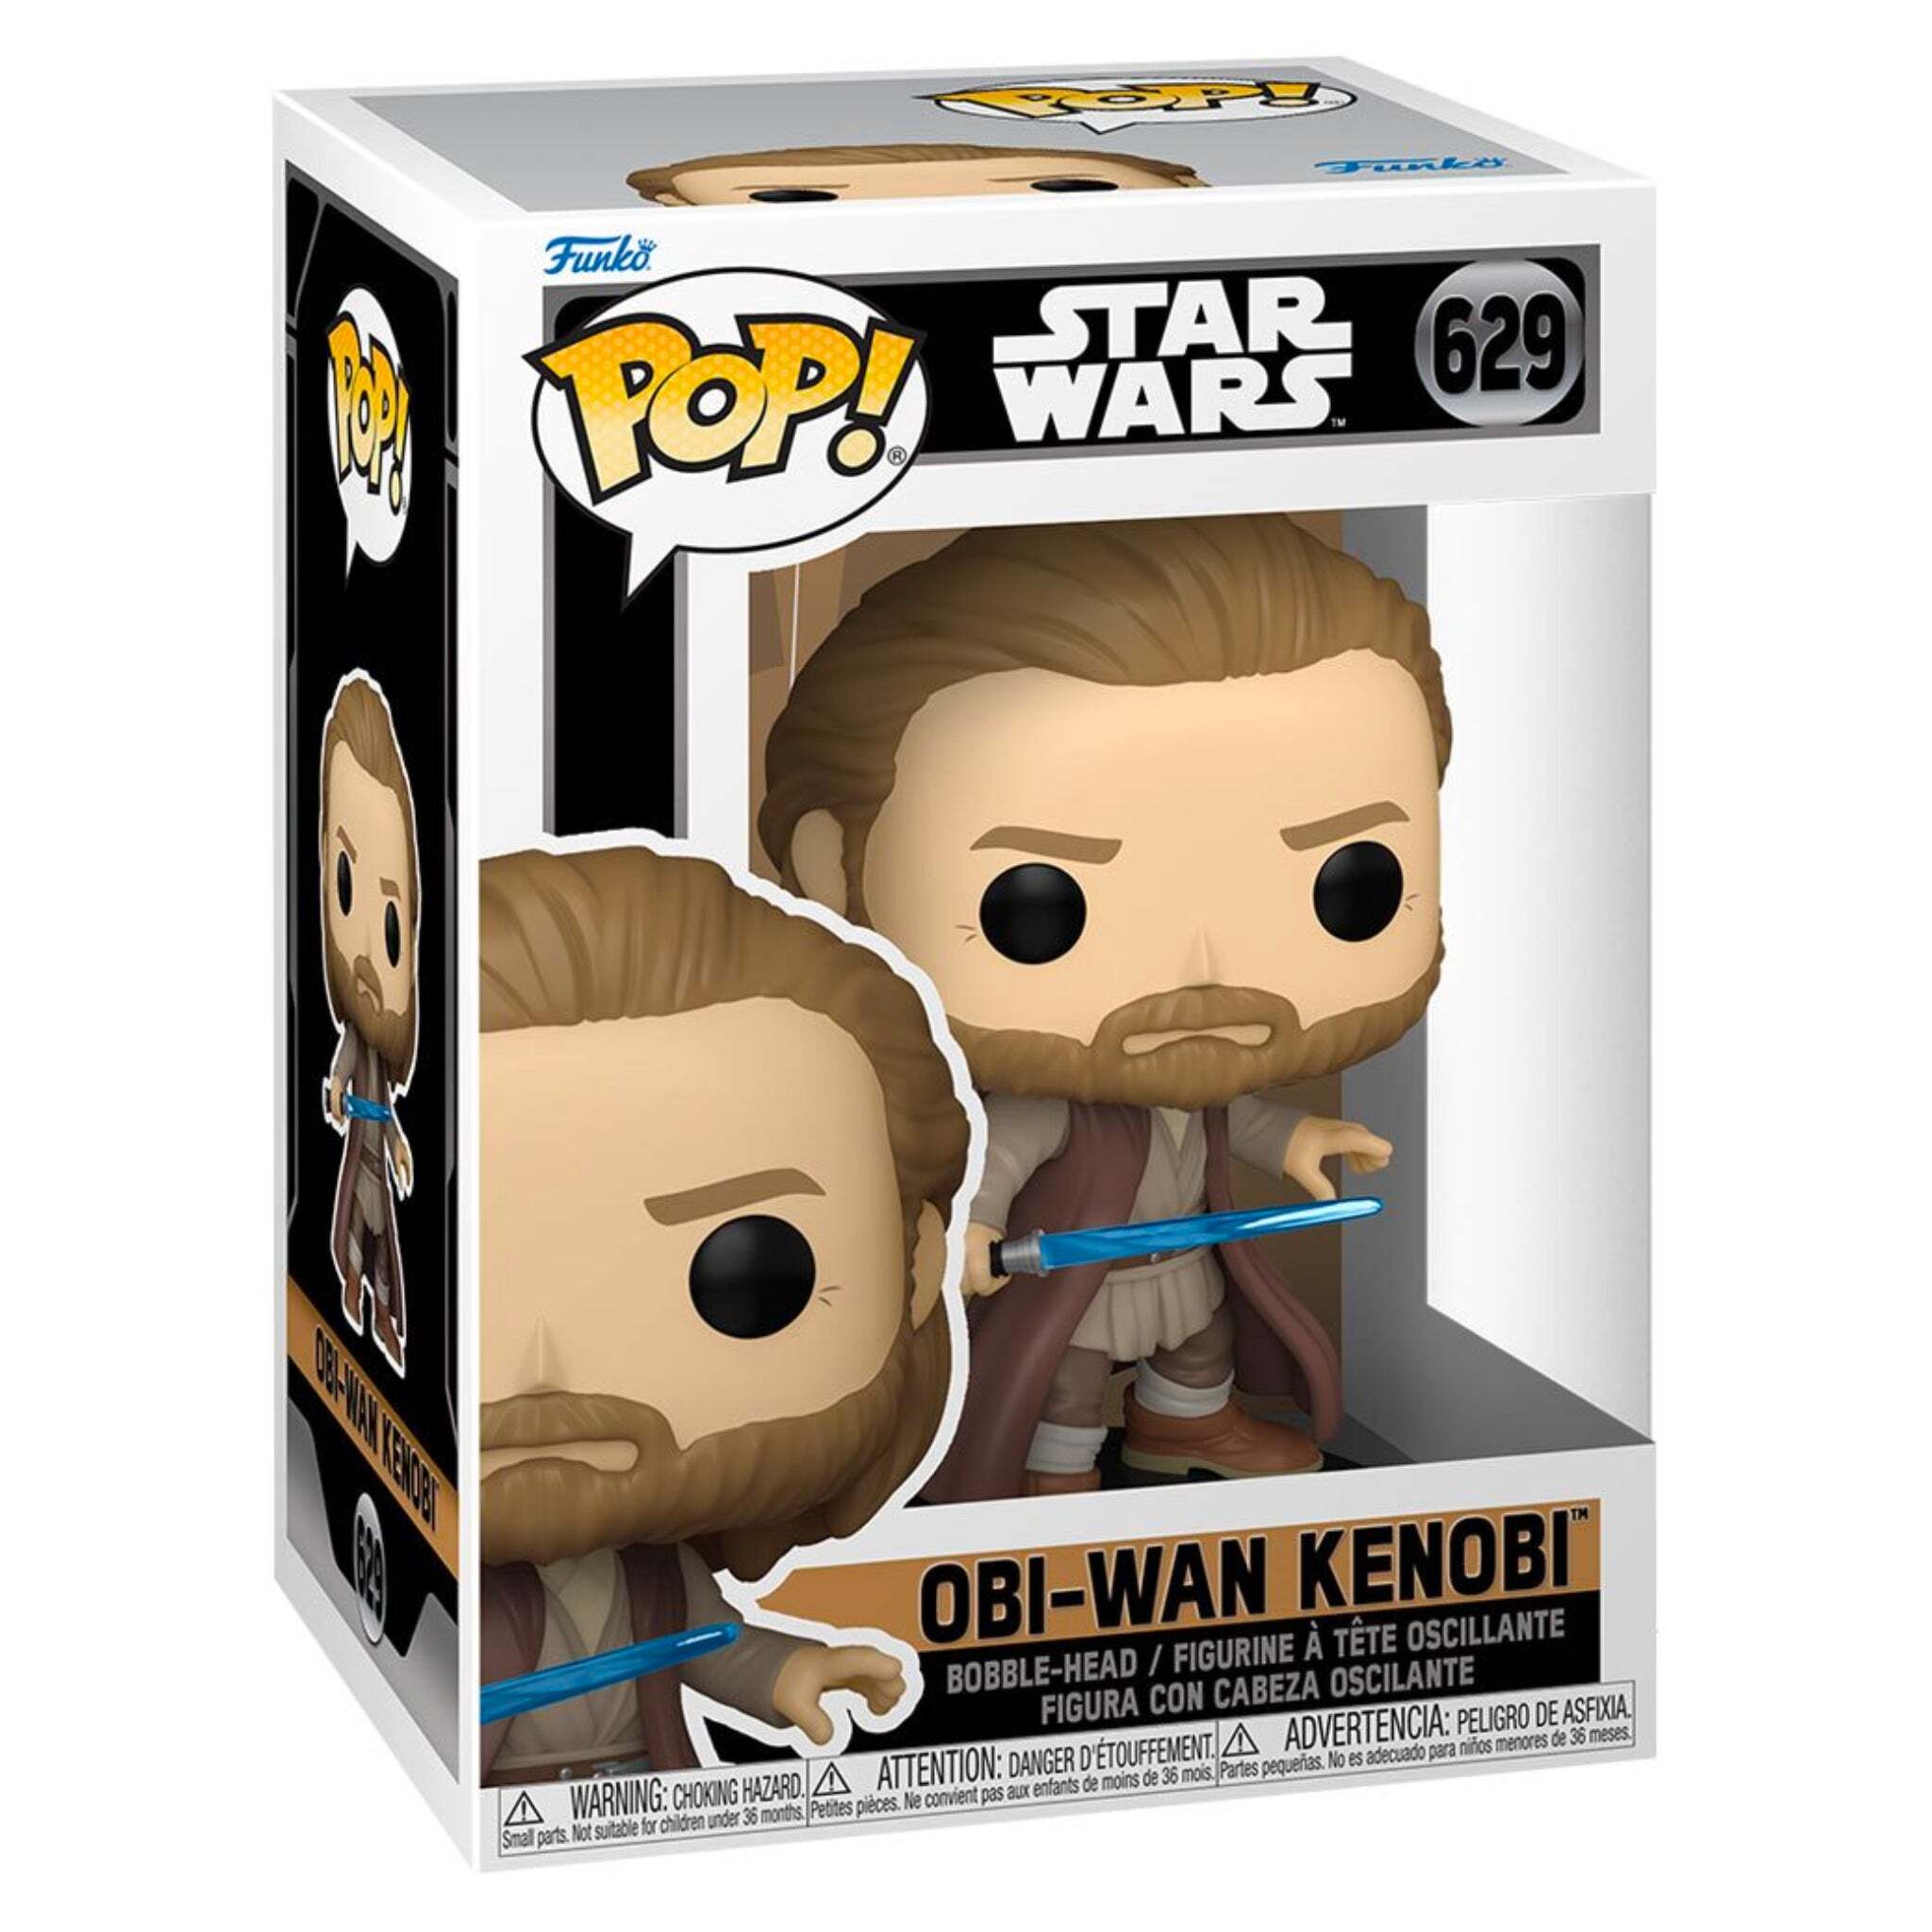 Obi-Wan Kenobi Funko Pop!